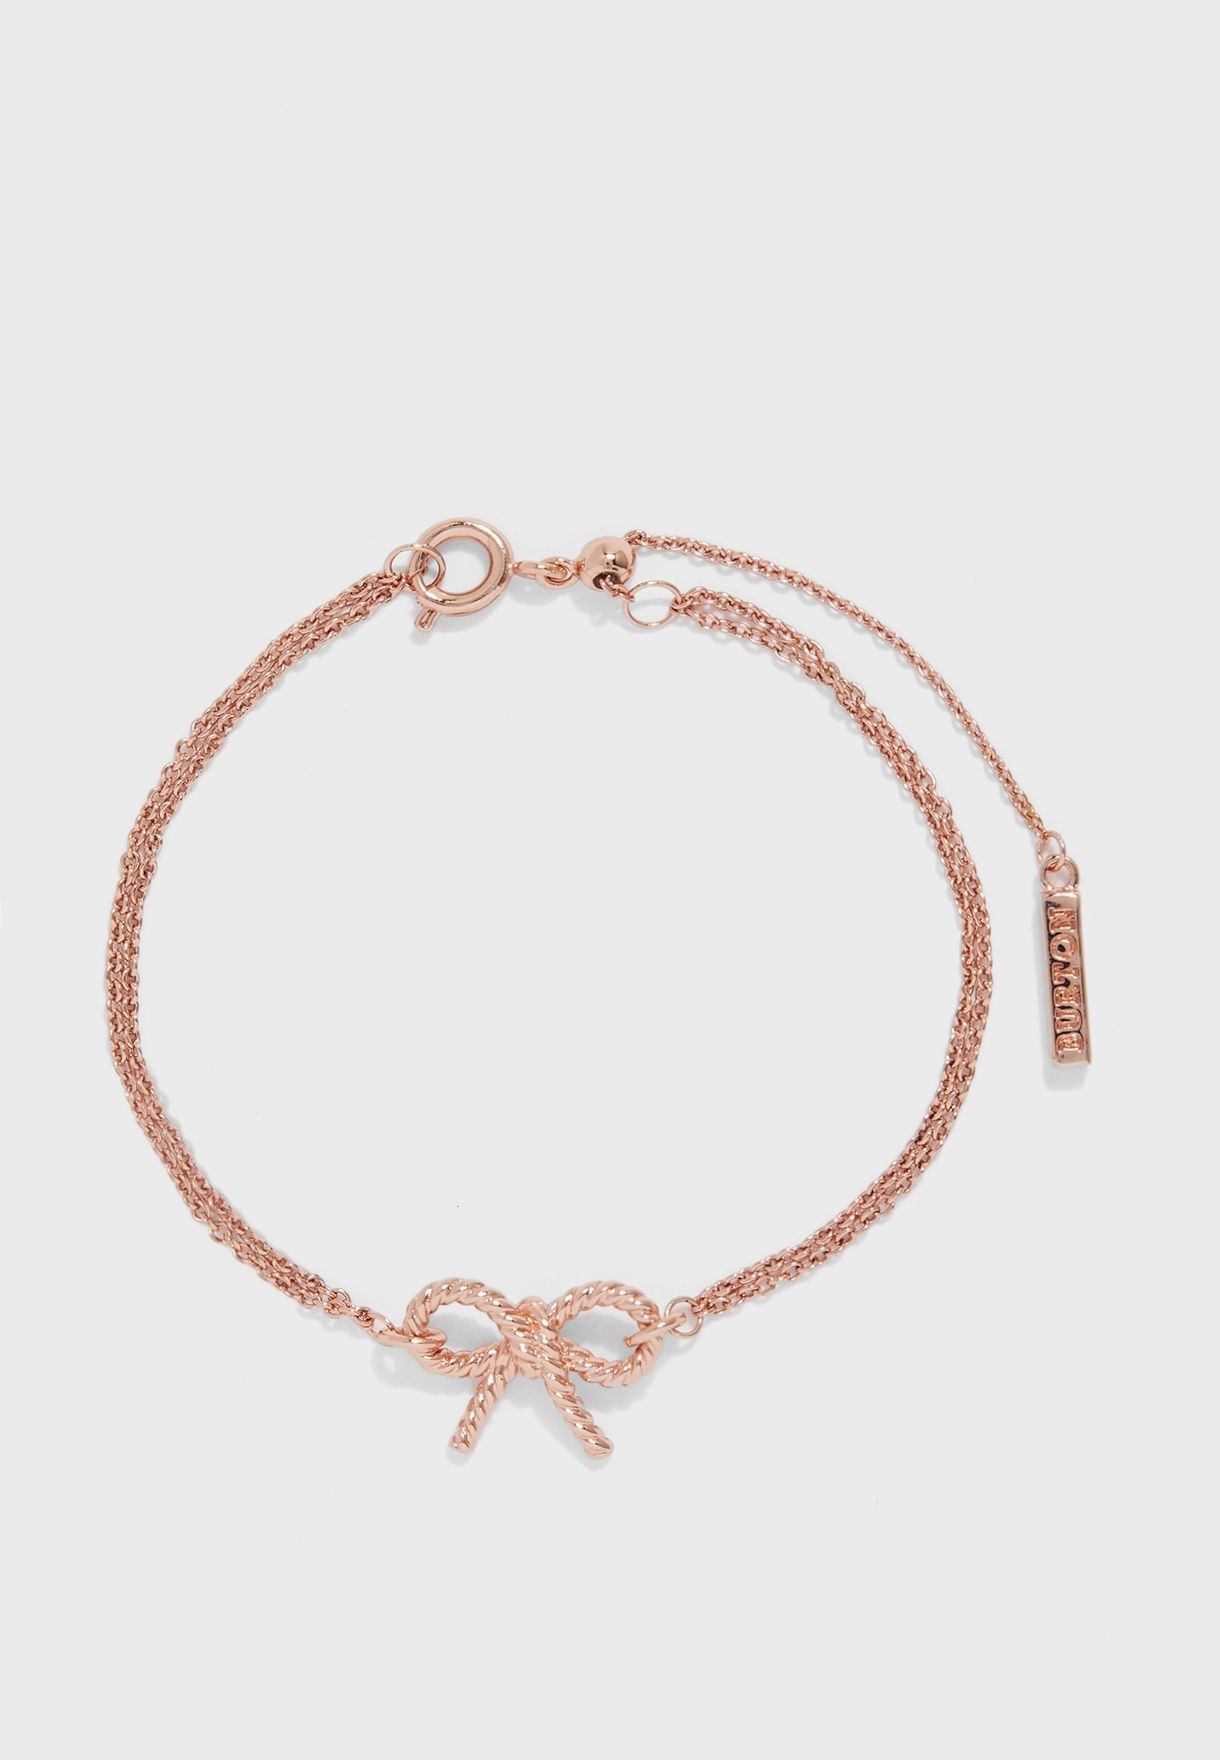 Vintage Bow Chain Bracelet